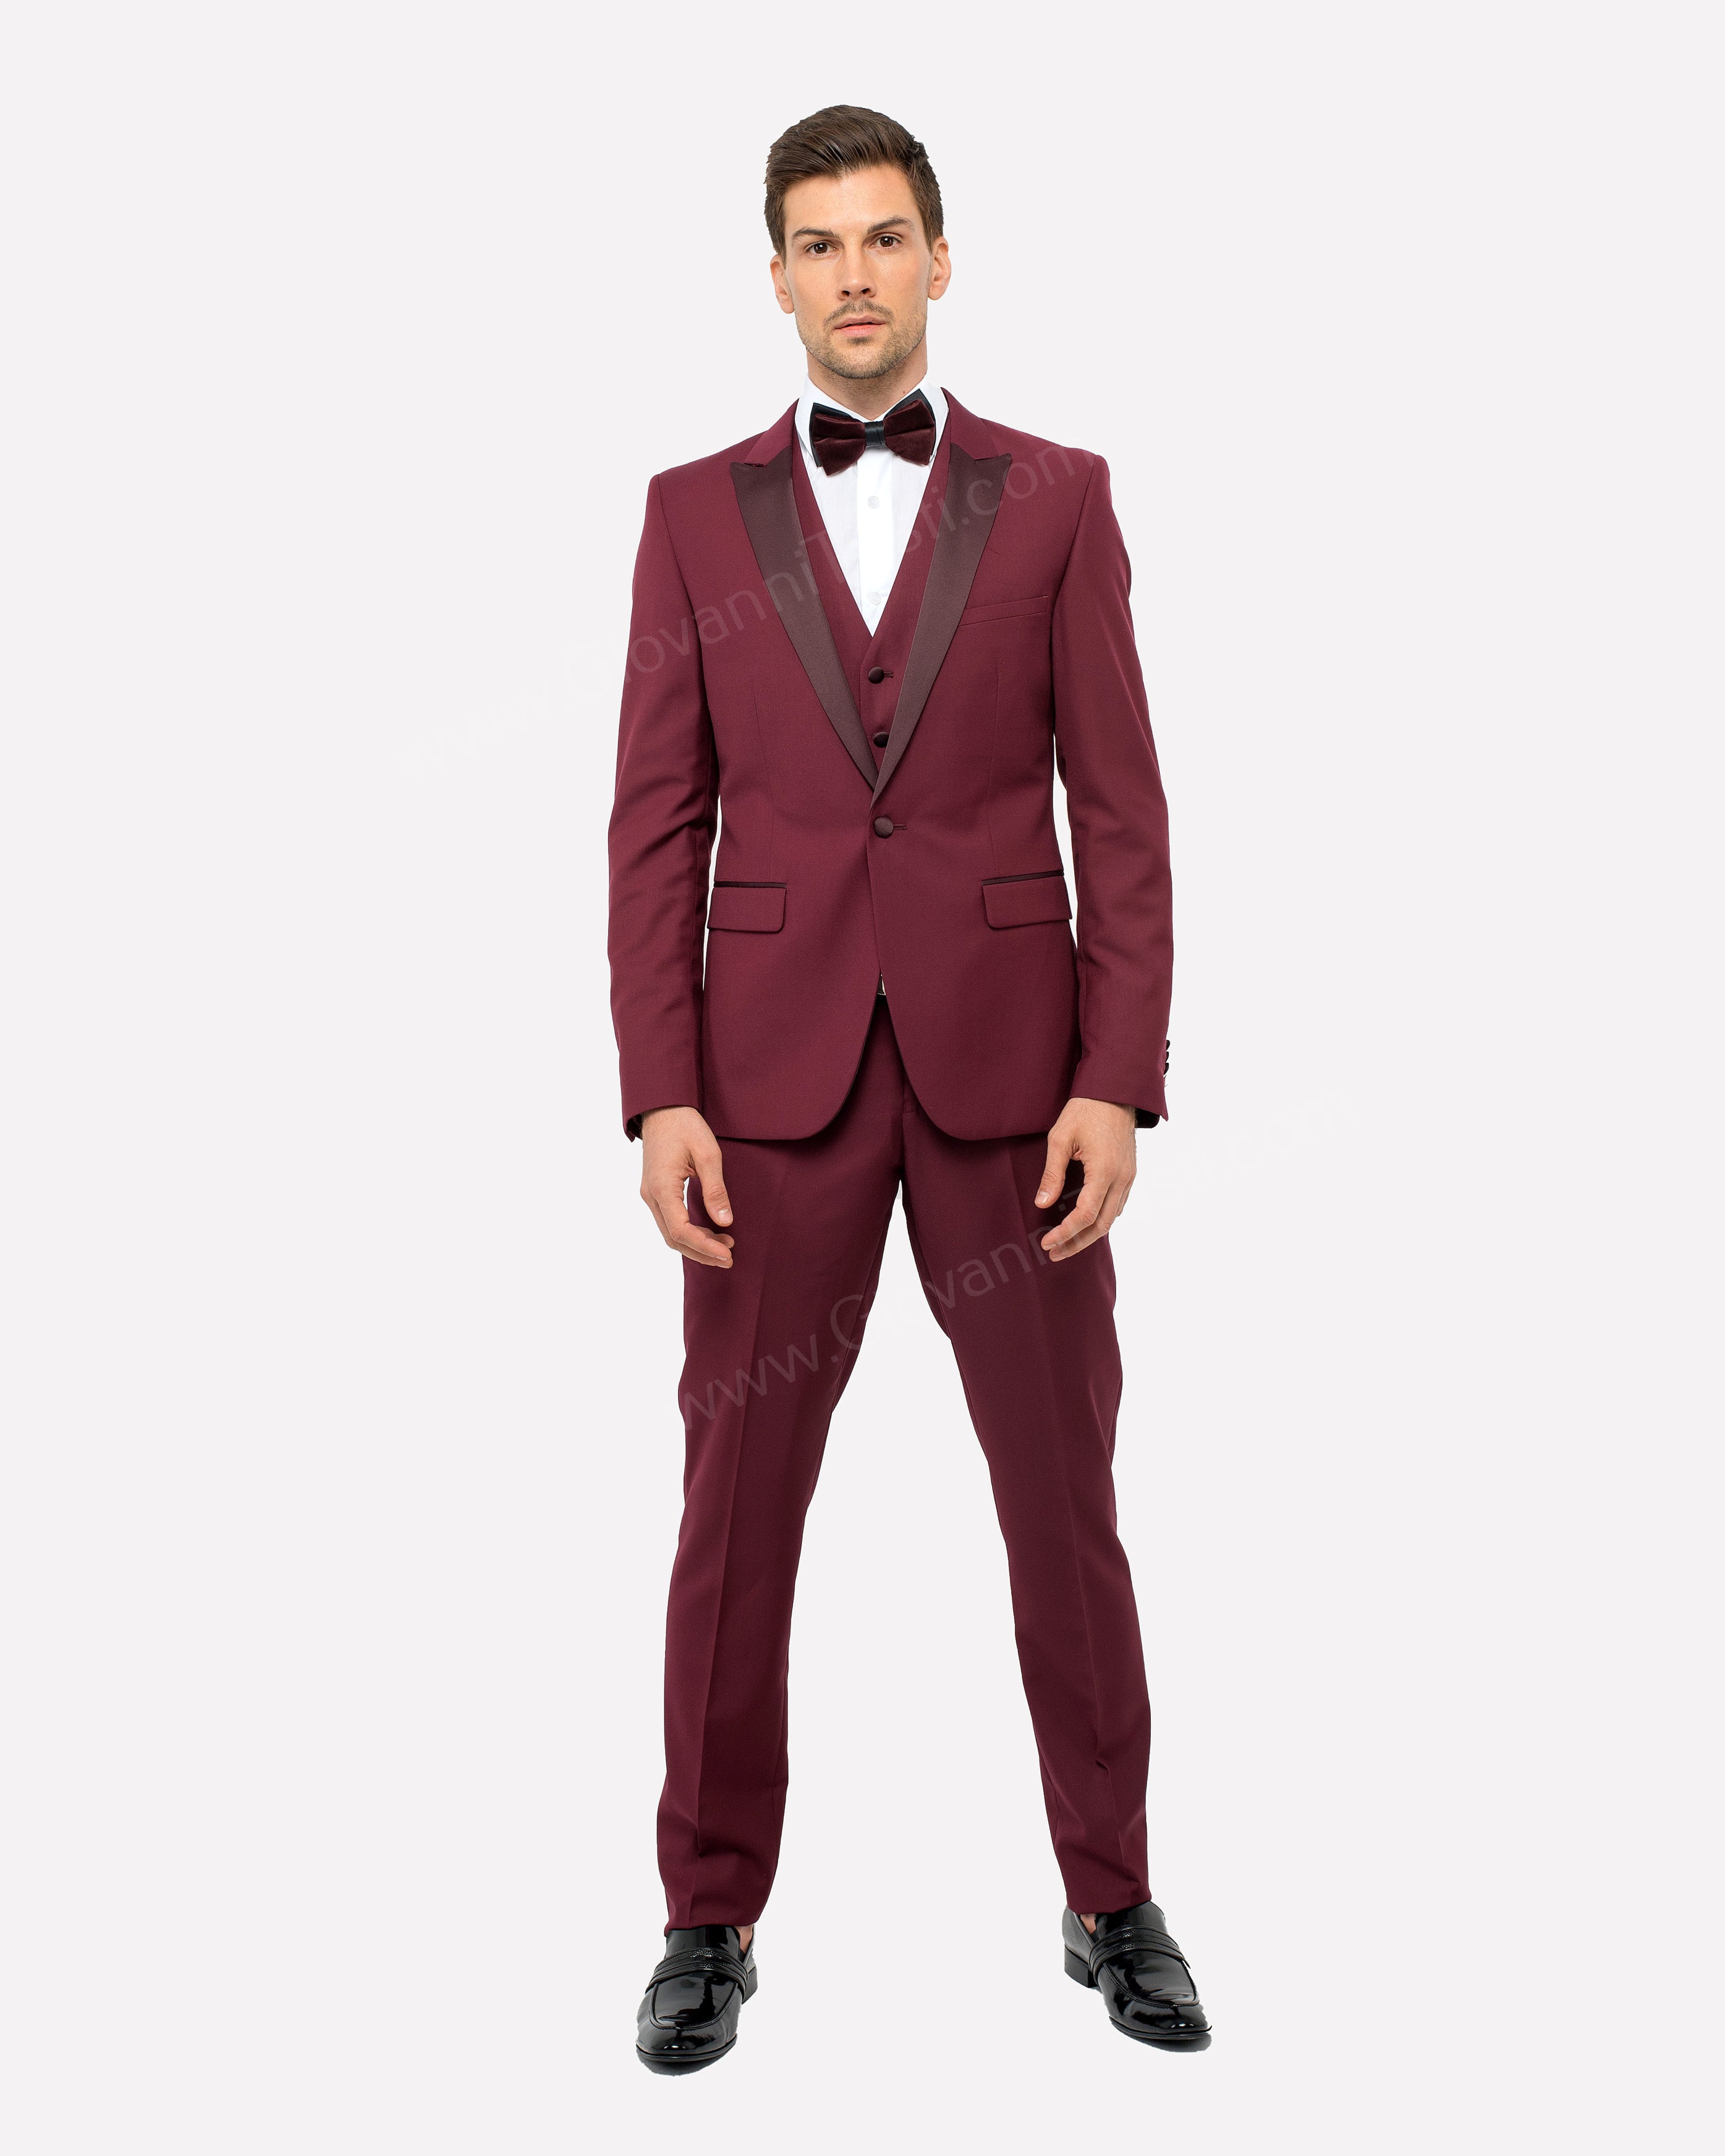 Slim Fit Tux Suit Mens Burgundy 1 Button SA MT187S Size 38 Long Final Sale